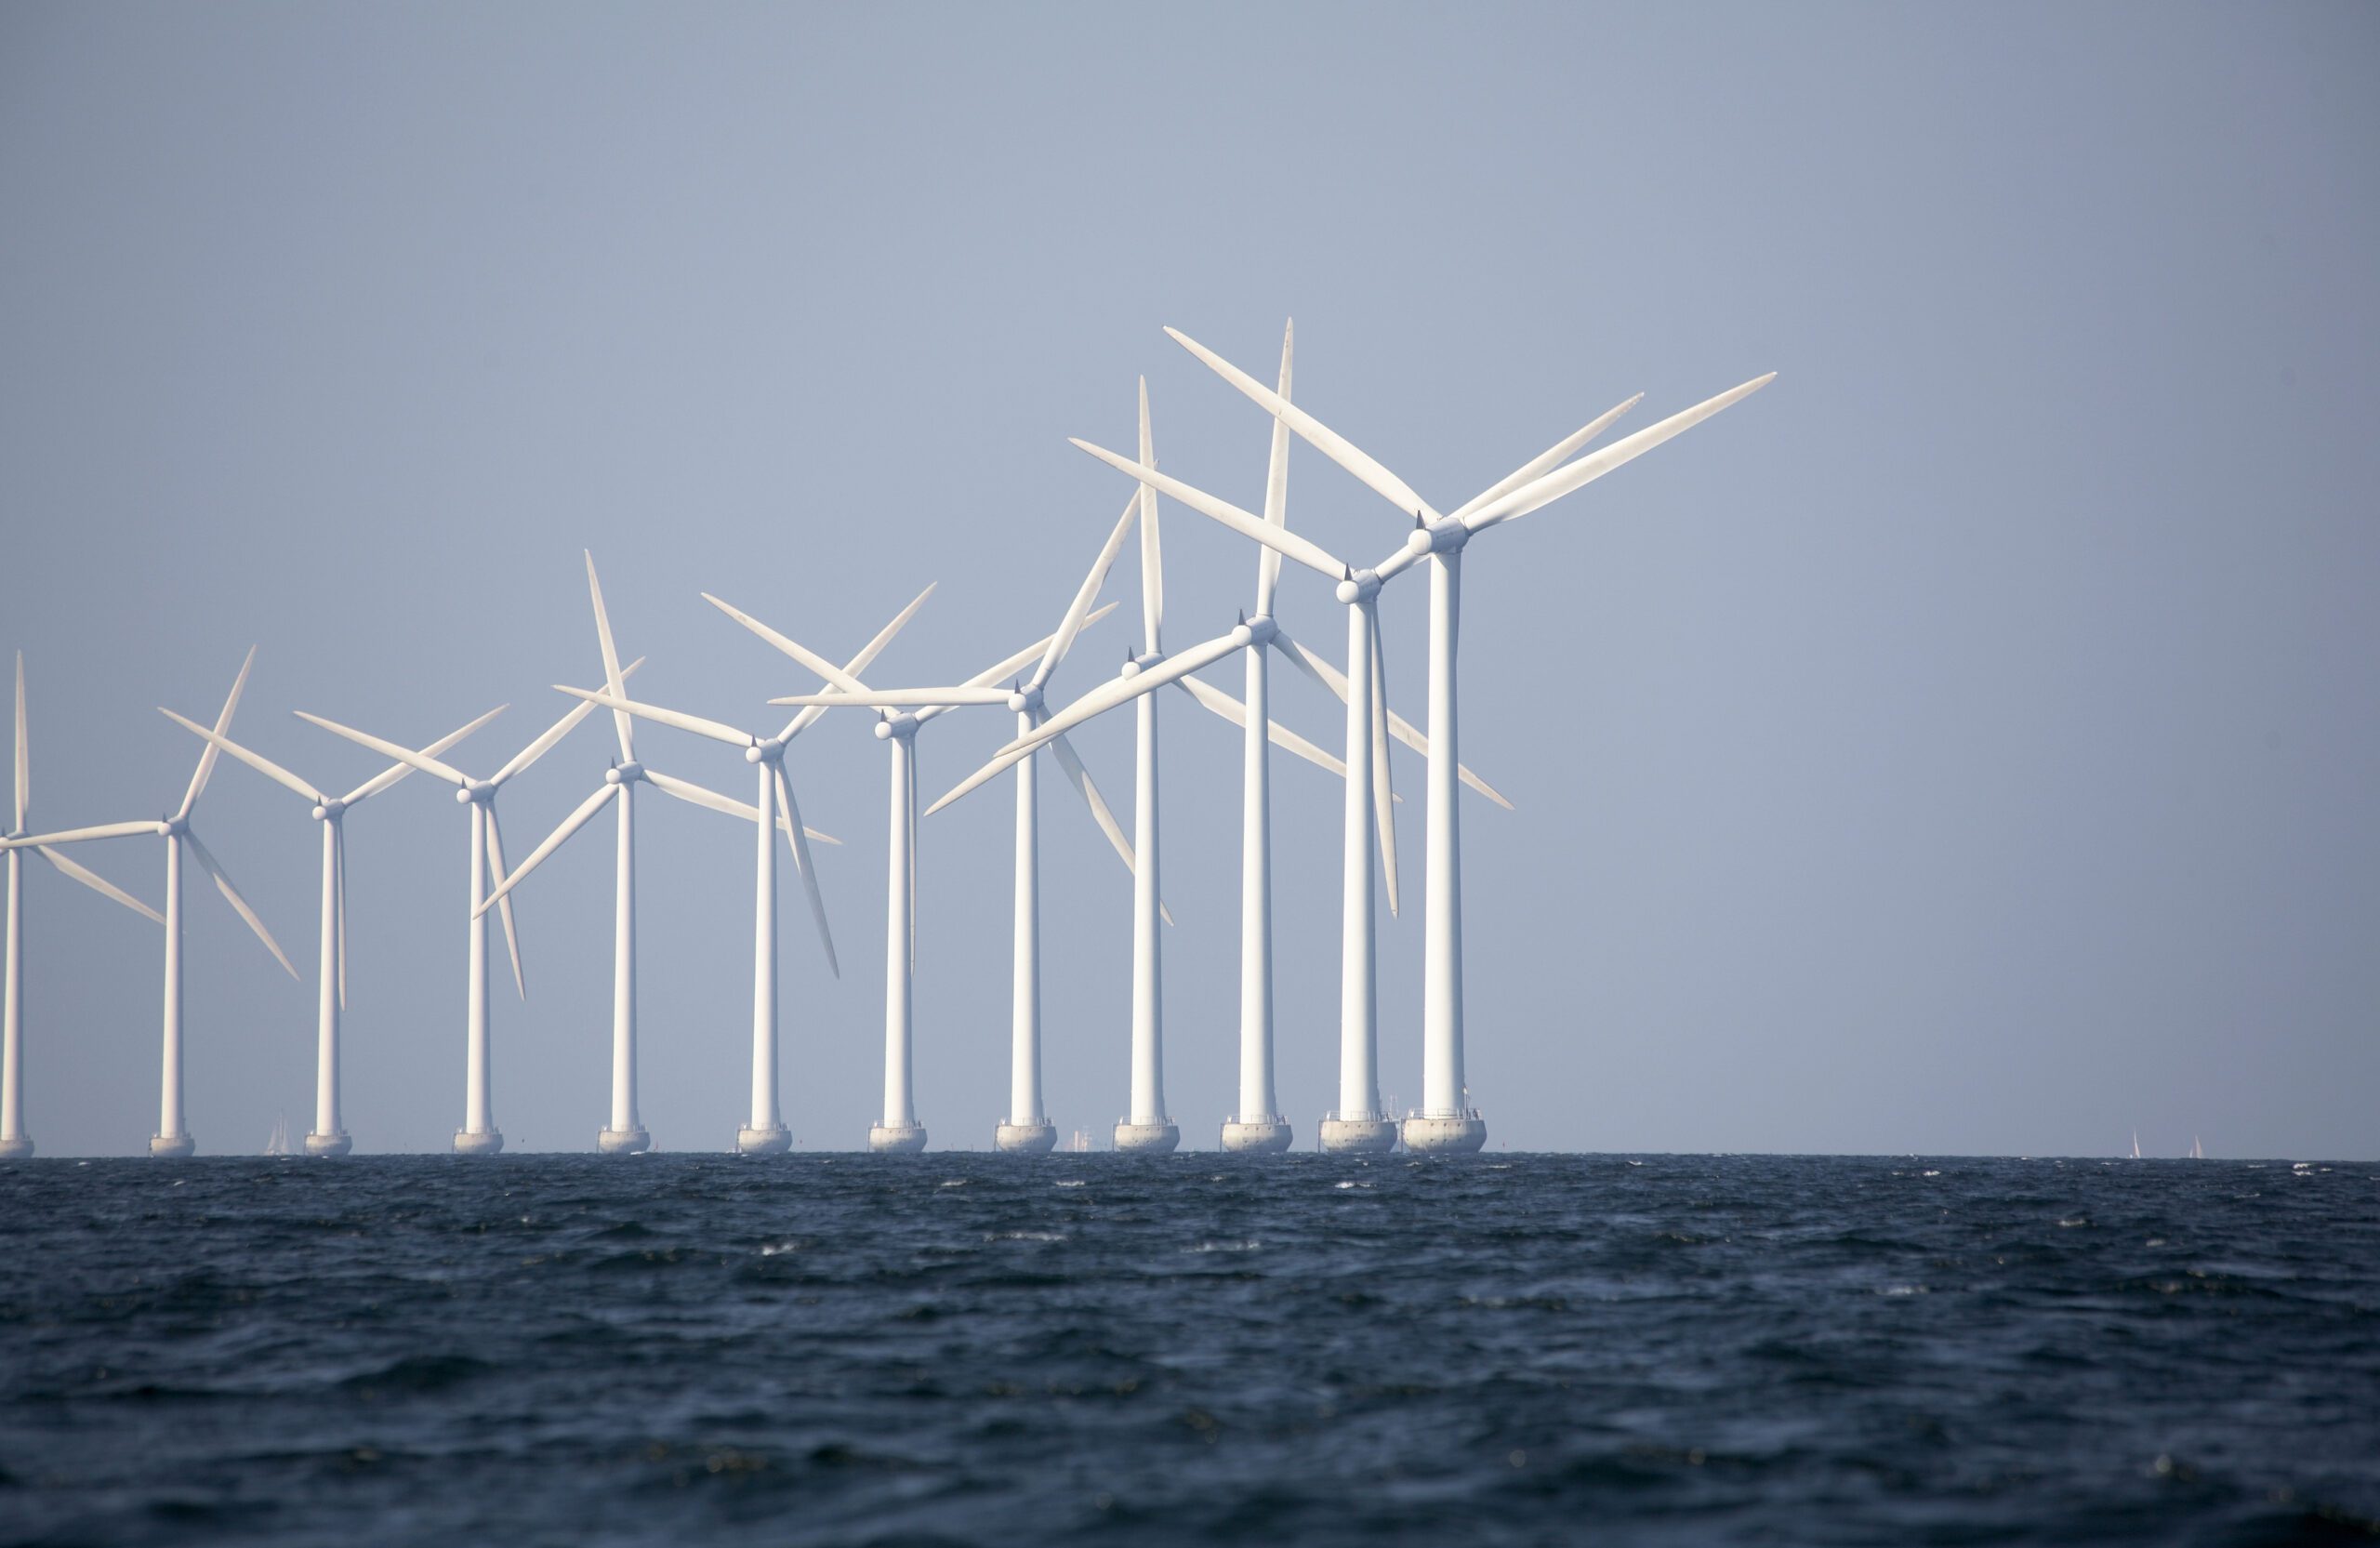 Group on renewable energy windmills